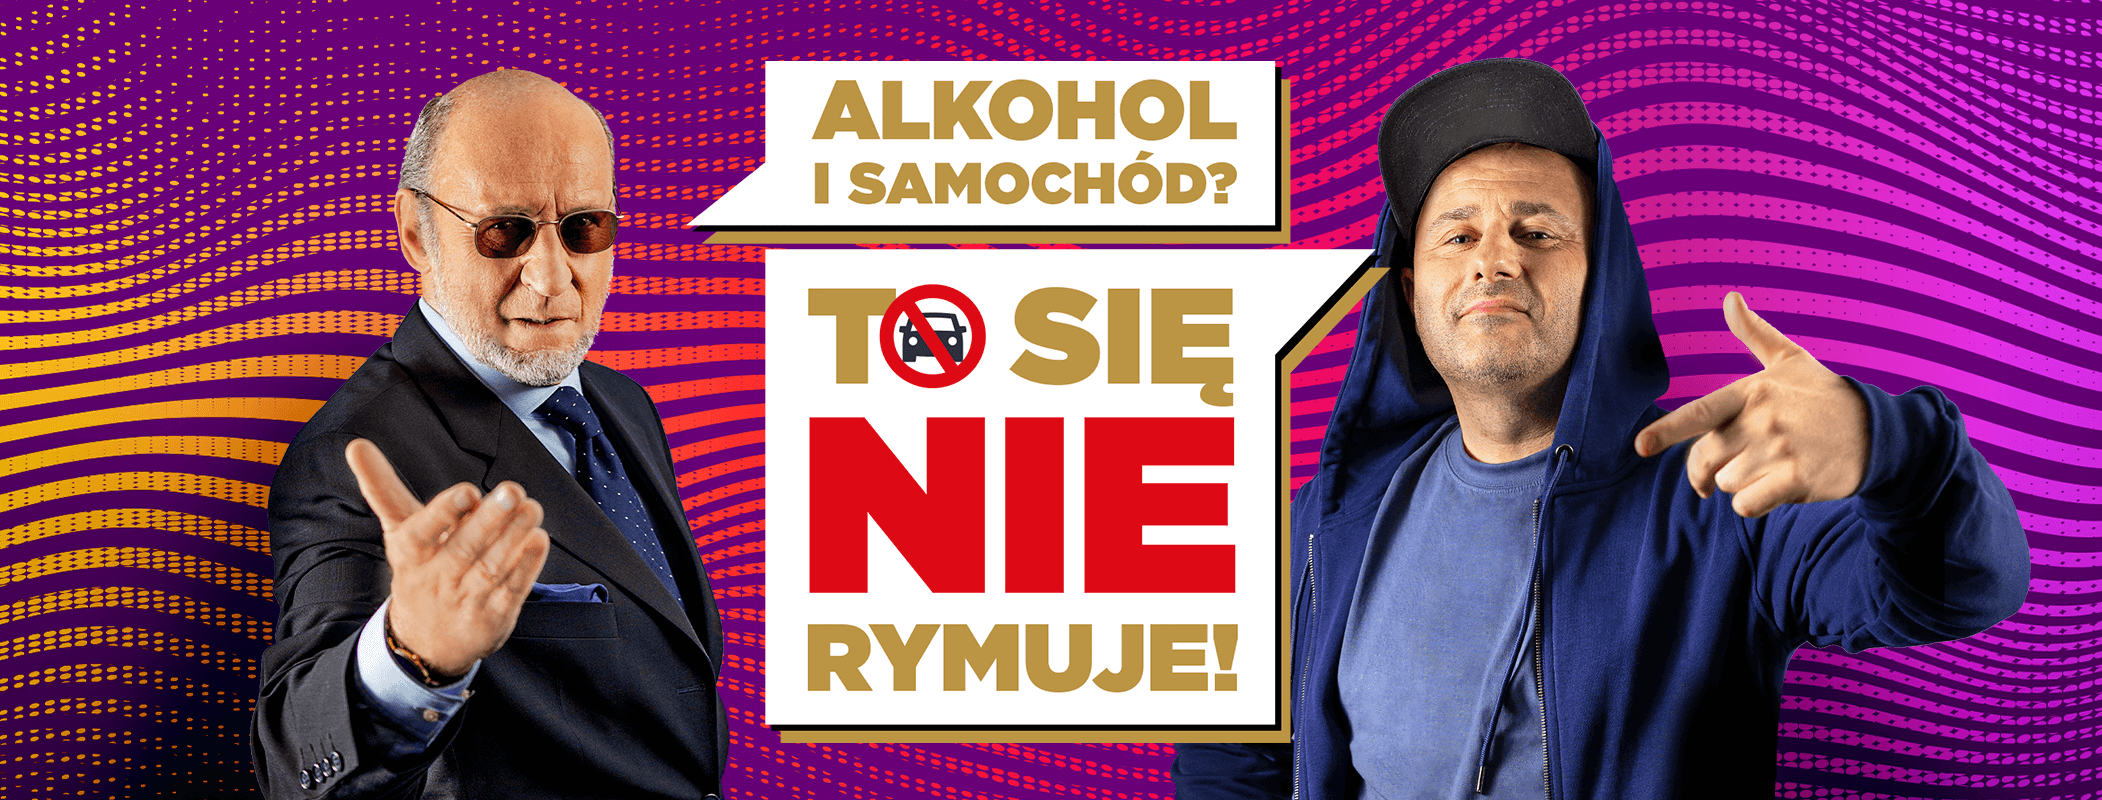 „Alkohol i samochód – to się nie rymuje” – Piotr Fronczewski i Pih nagrali utwór w ramach muzycznej kampanii społecznej Kompanii Piwowarskiej